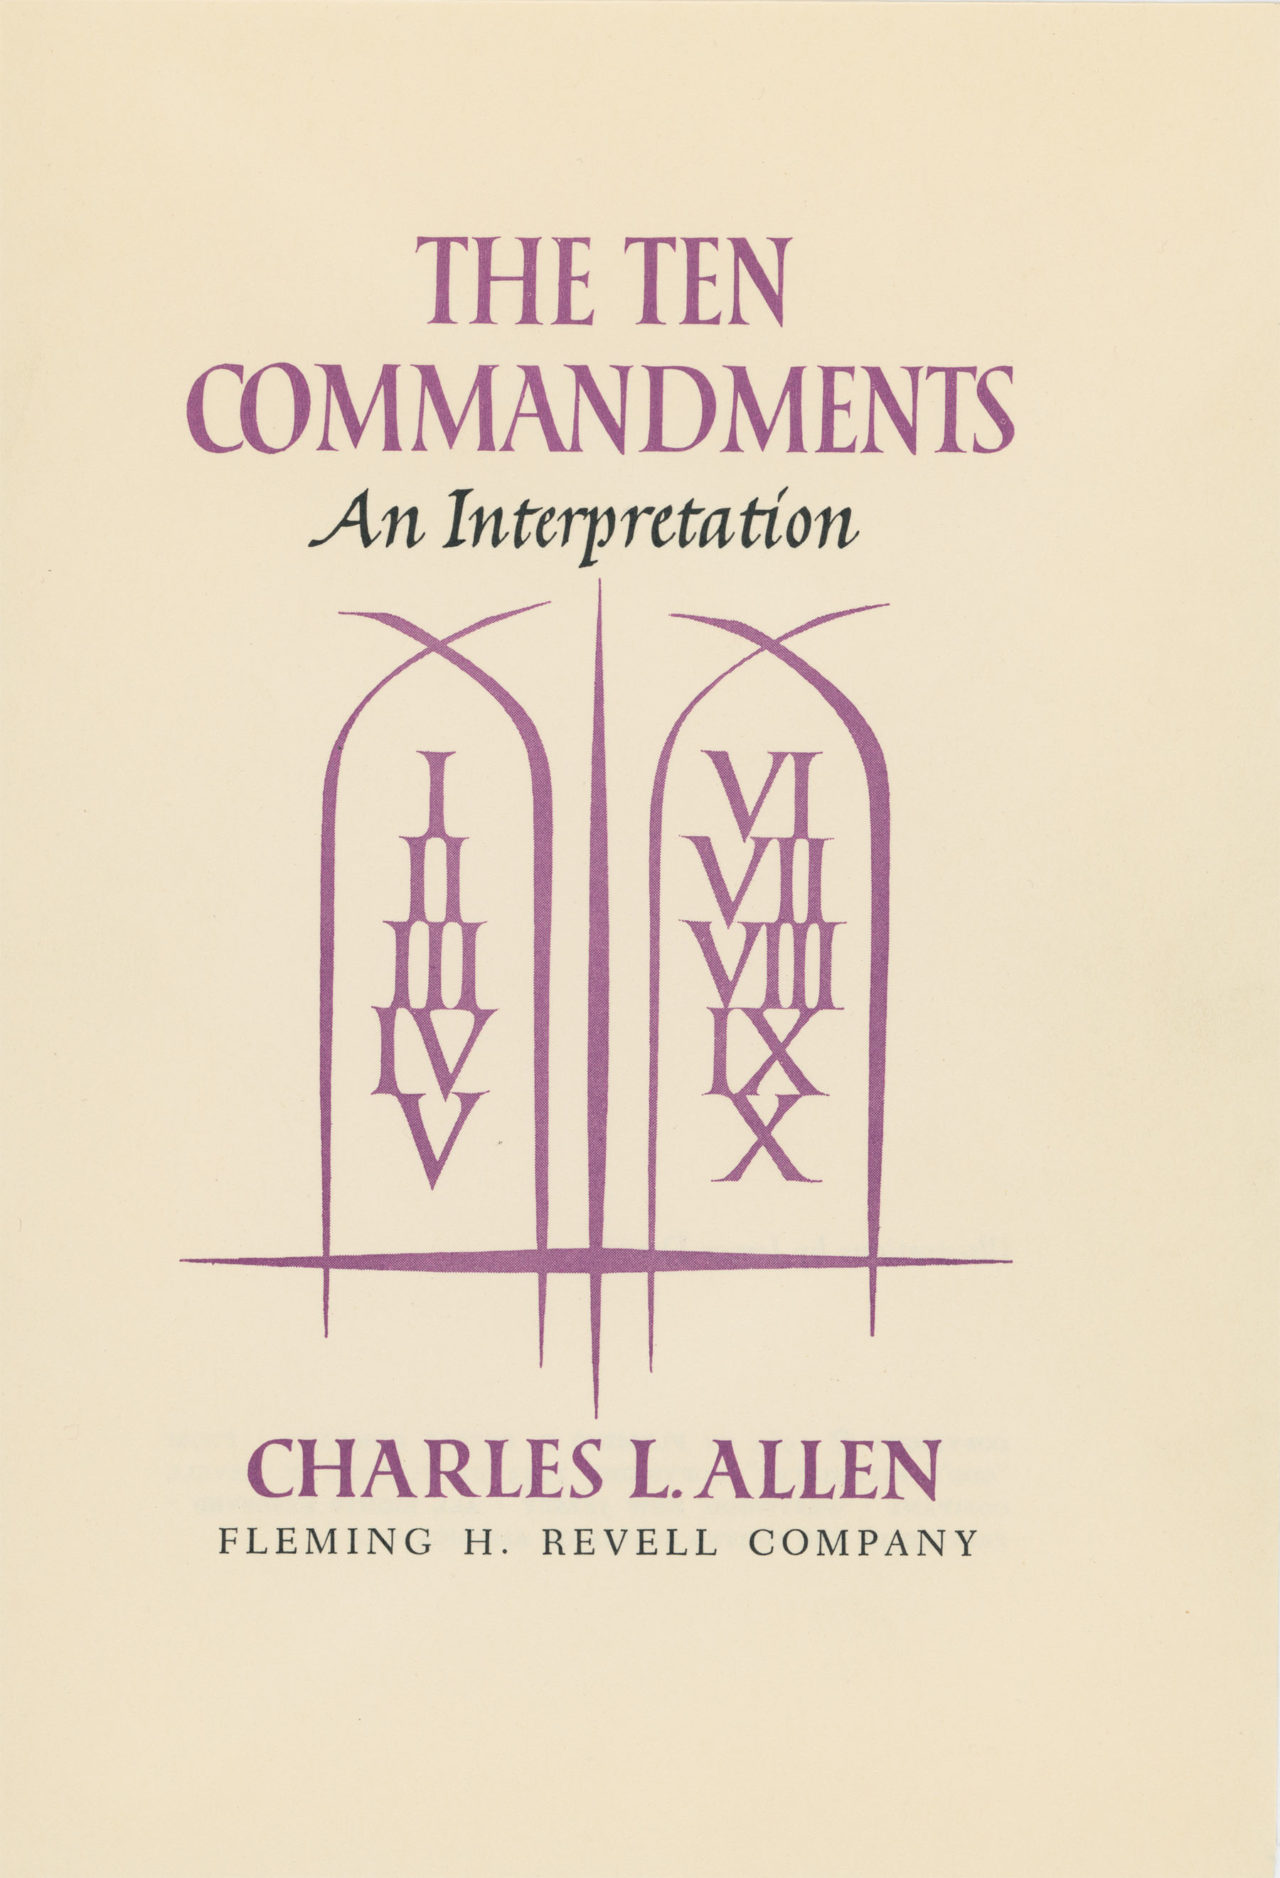 The Ten Commandments title page